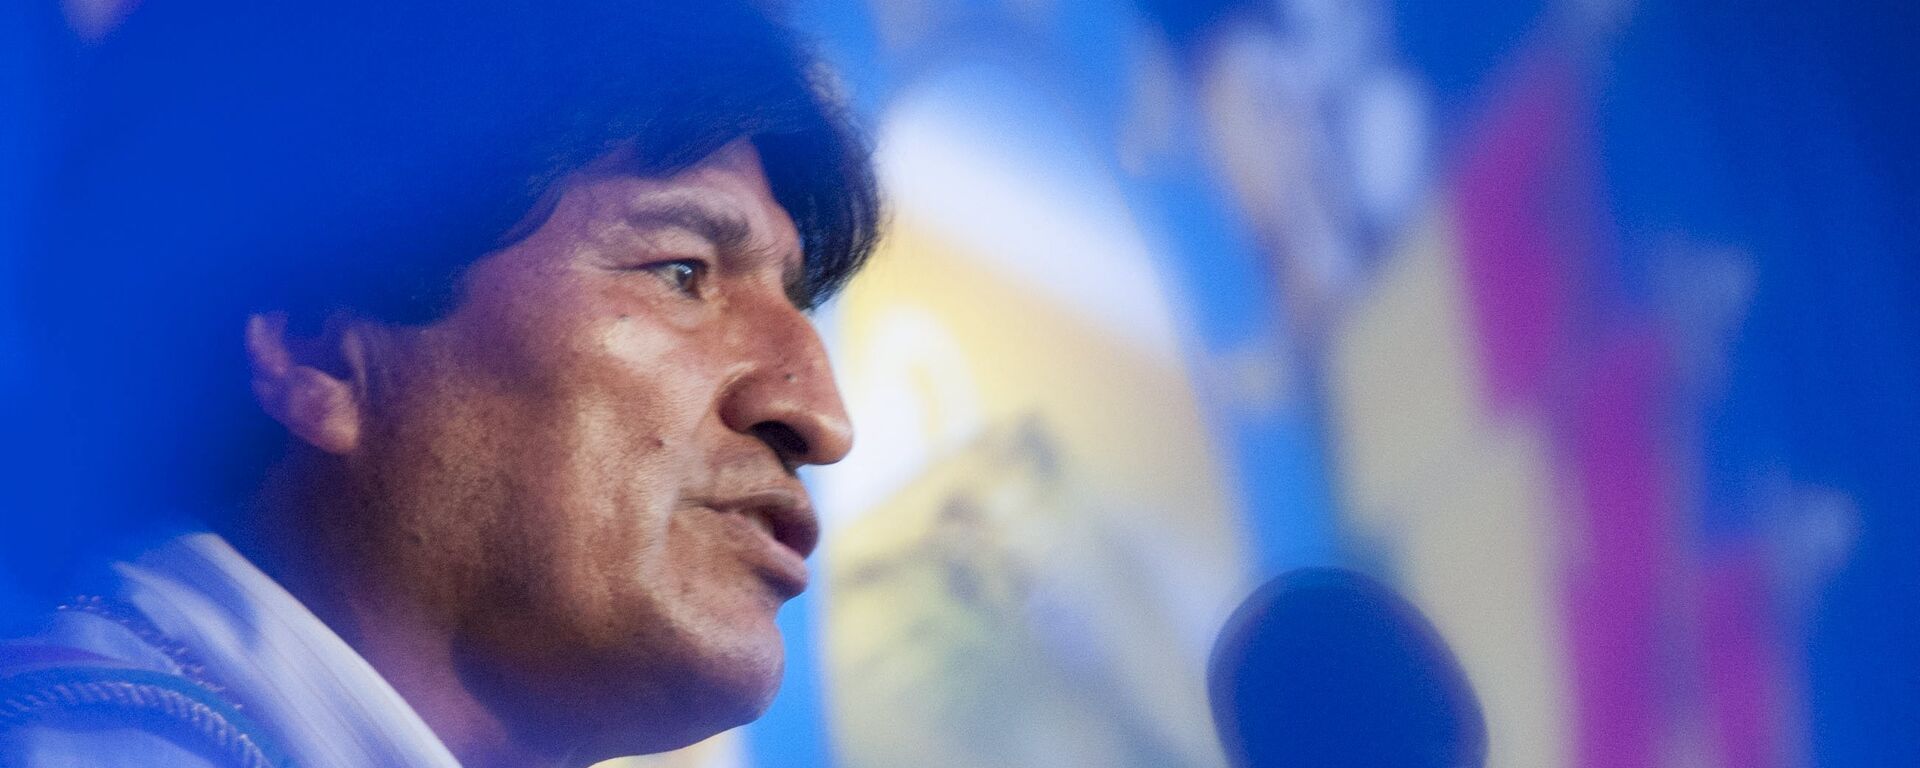 Evo Morales, expresidente de Bolivia - Sputnik Mundo, 1920, 30.08.2021